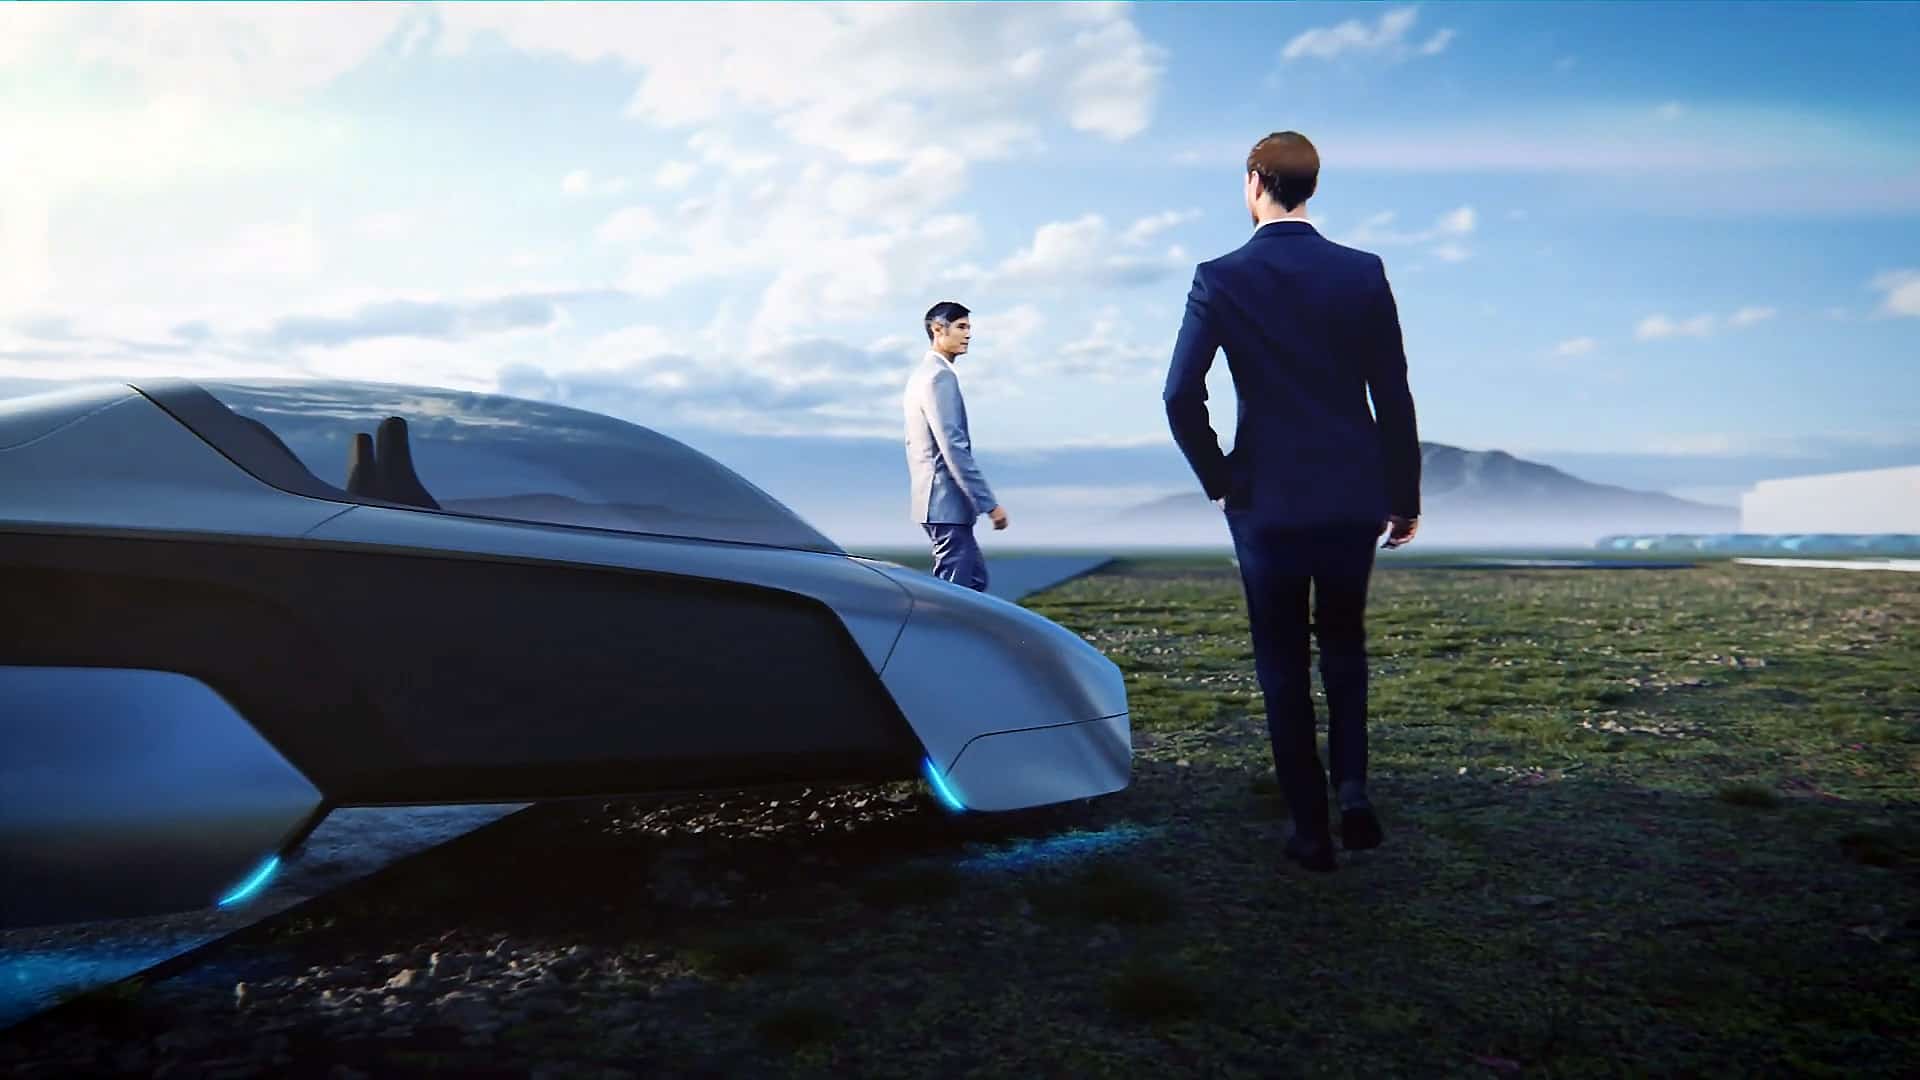 Der Dürr Consulting Mitarbeiter und der Kunde steigen aus dem grauen futuristischen Auto aus und laufen eine dramatische Landschaft entlang.